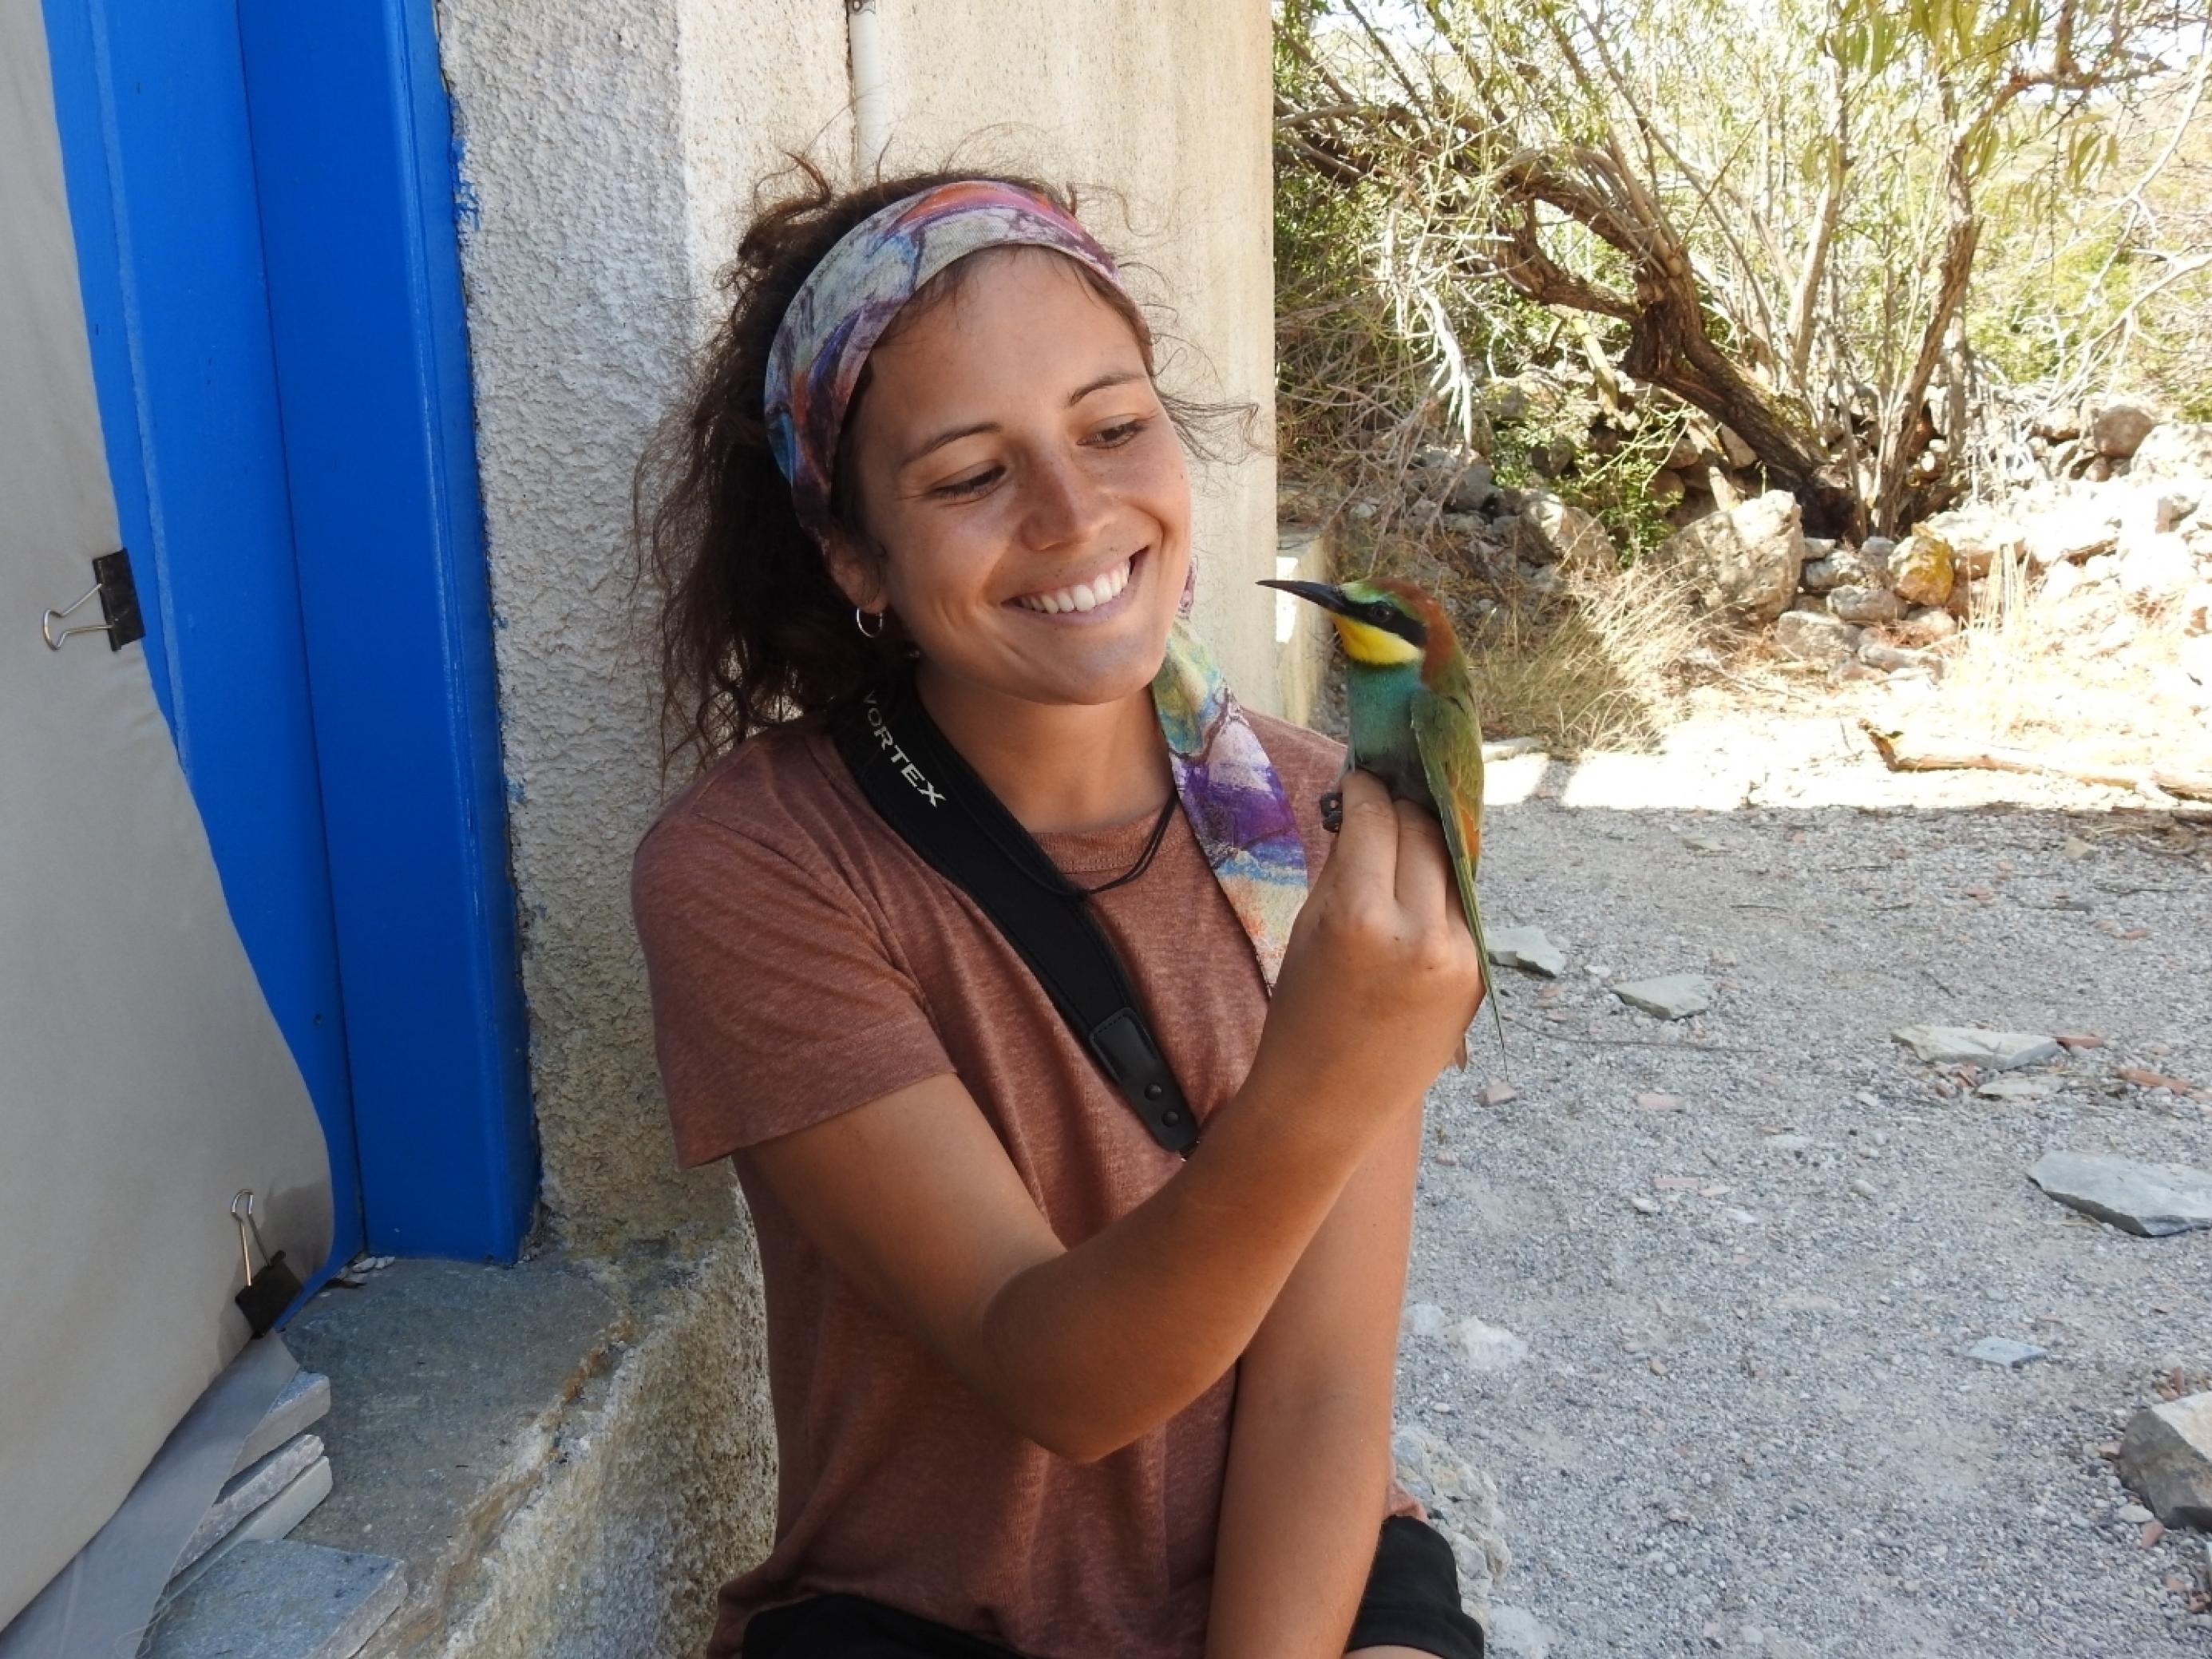 Die junge Ornithologin Verena Rupprecht sitzt vor einer Hütte und hält einen bunten Vogel in der Hand, einen Bienenfresser